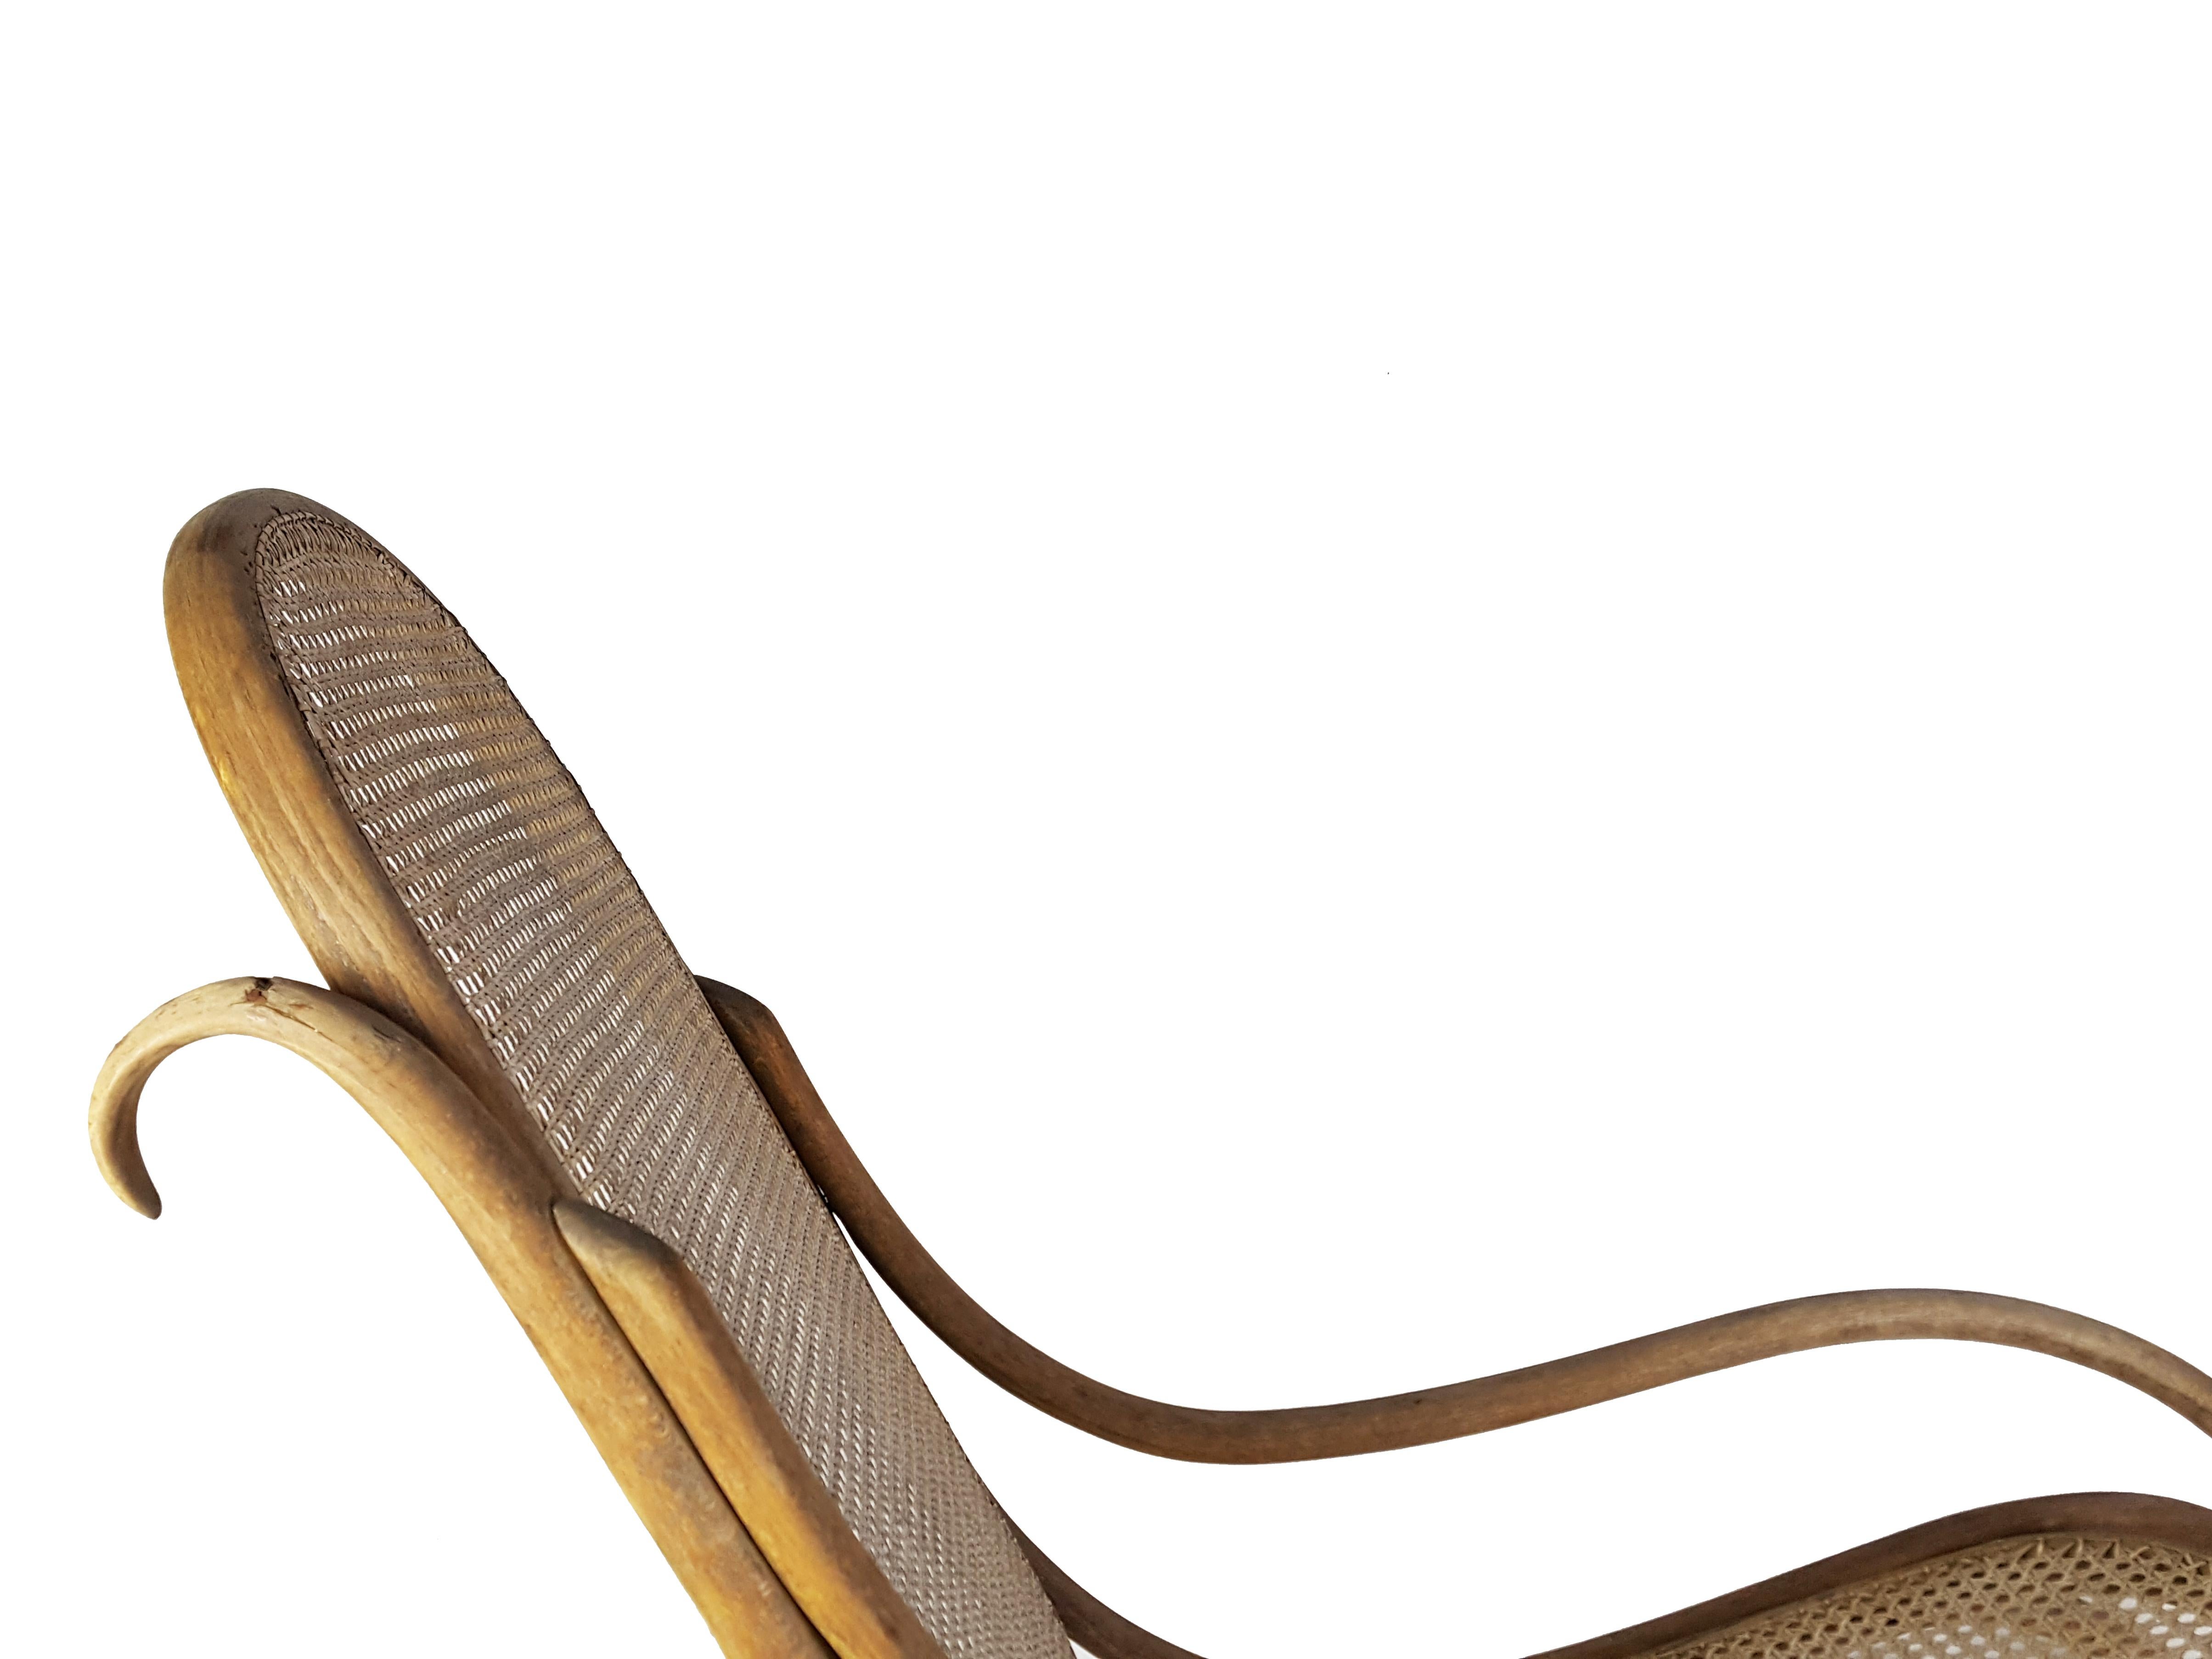 Chaise à bascule en bois courbé et paille produite par Mondus au début du 20e siècle.
Le fauteuil est complet et porte l'étiquette d'origine du fabricant : 